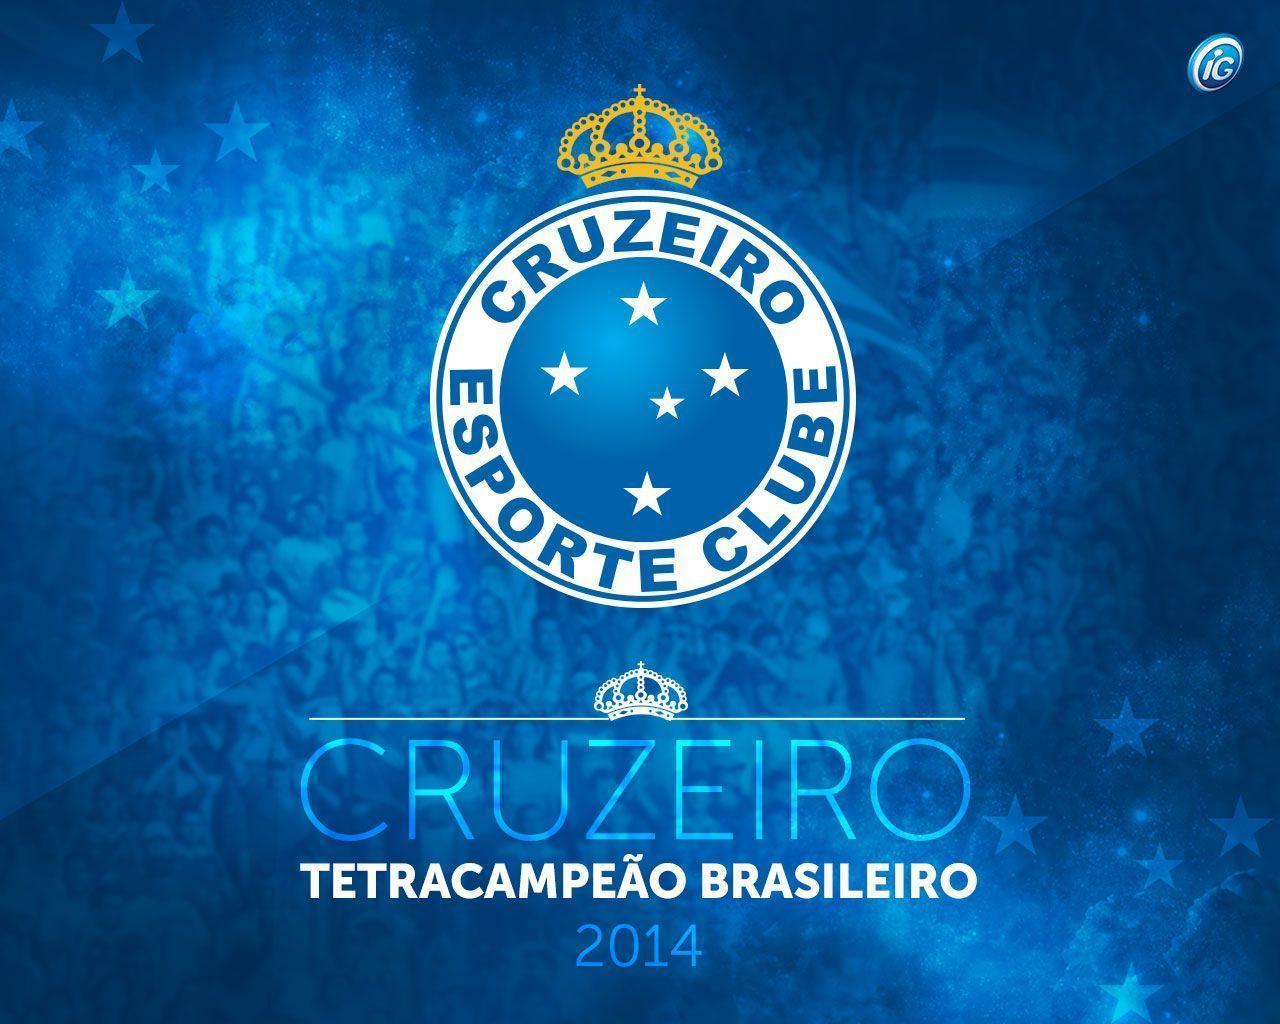 Cruzeiro campeão brasileiro 2014: heróis do tetra